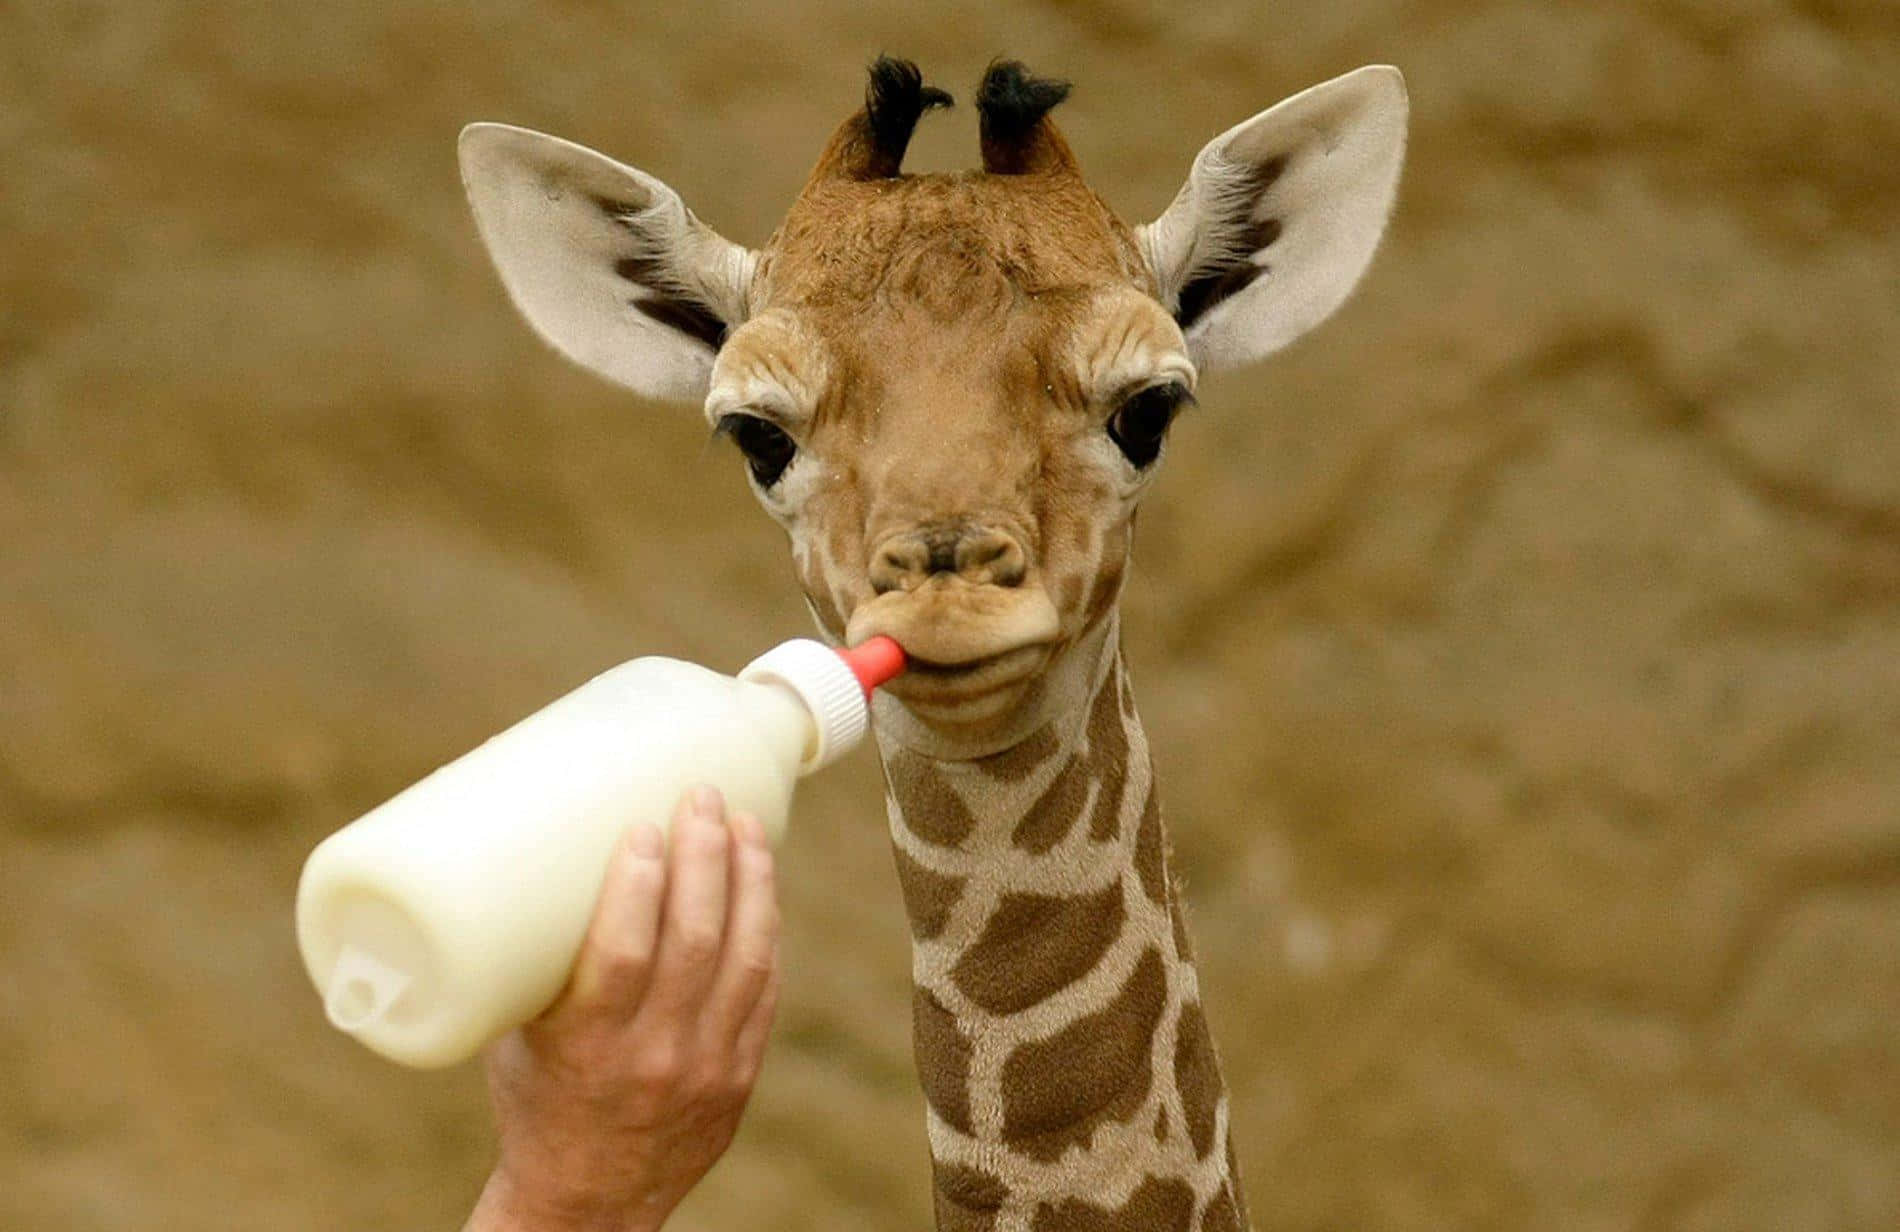 Bemvindo Ao Mundo, Pequena Girafa!